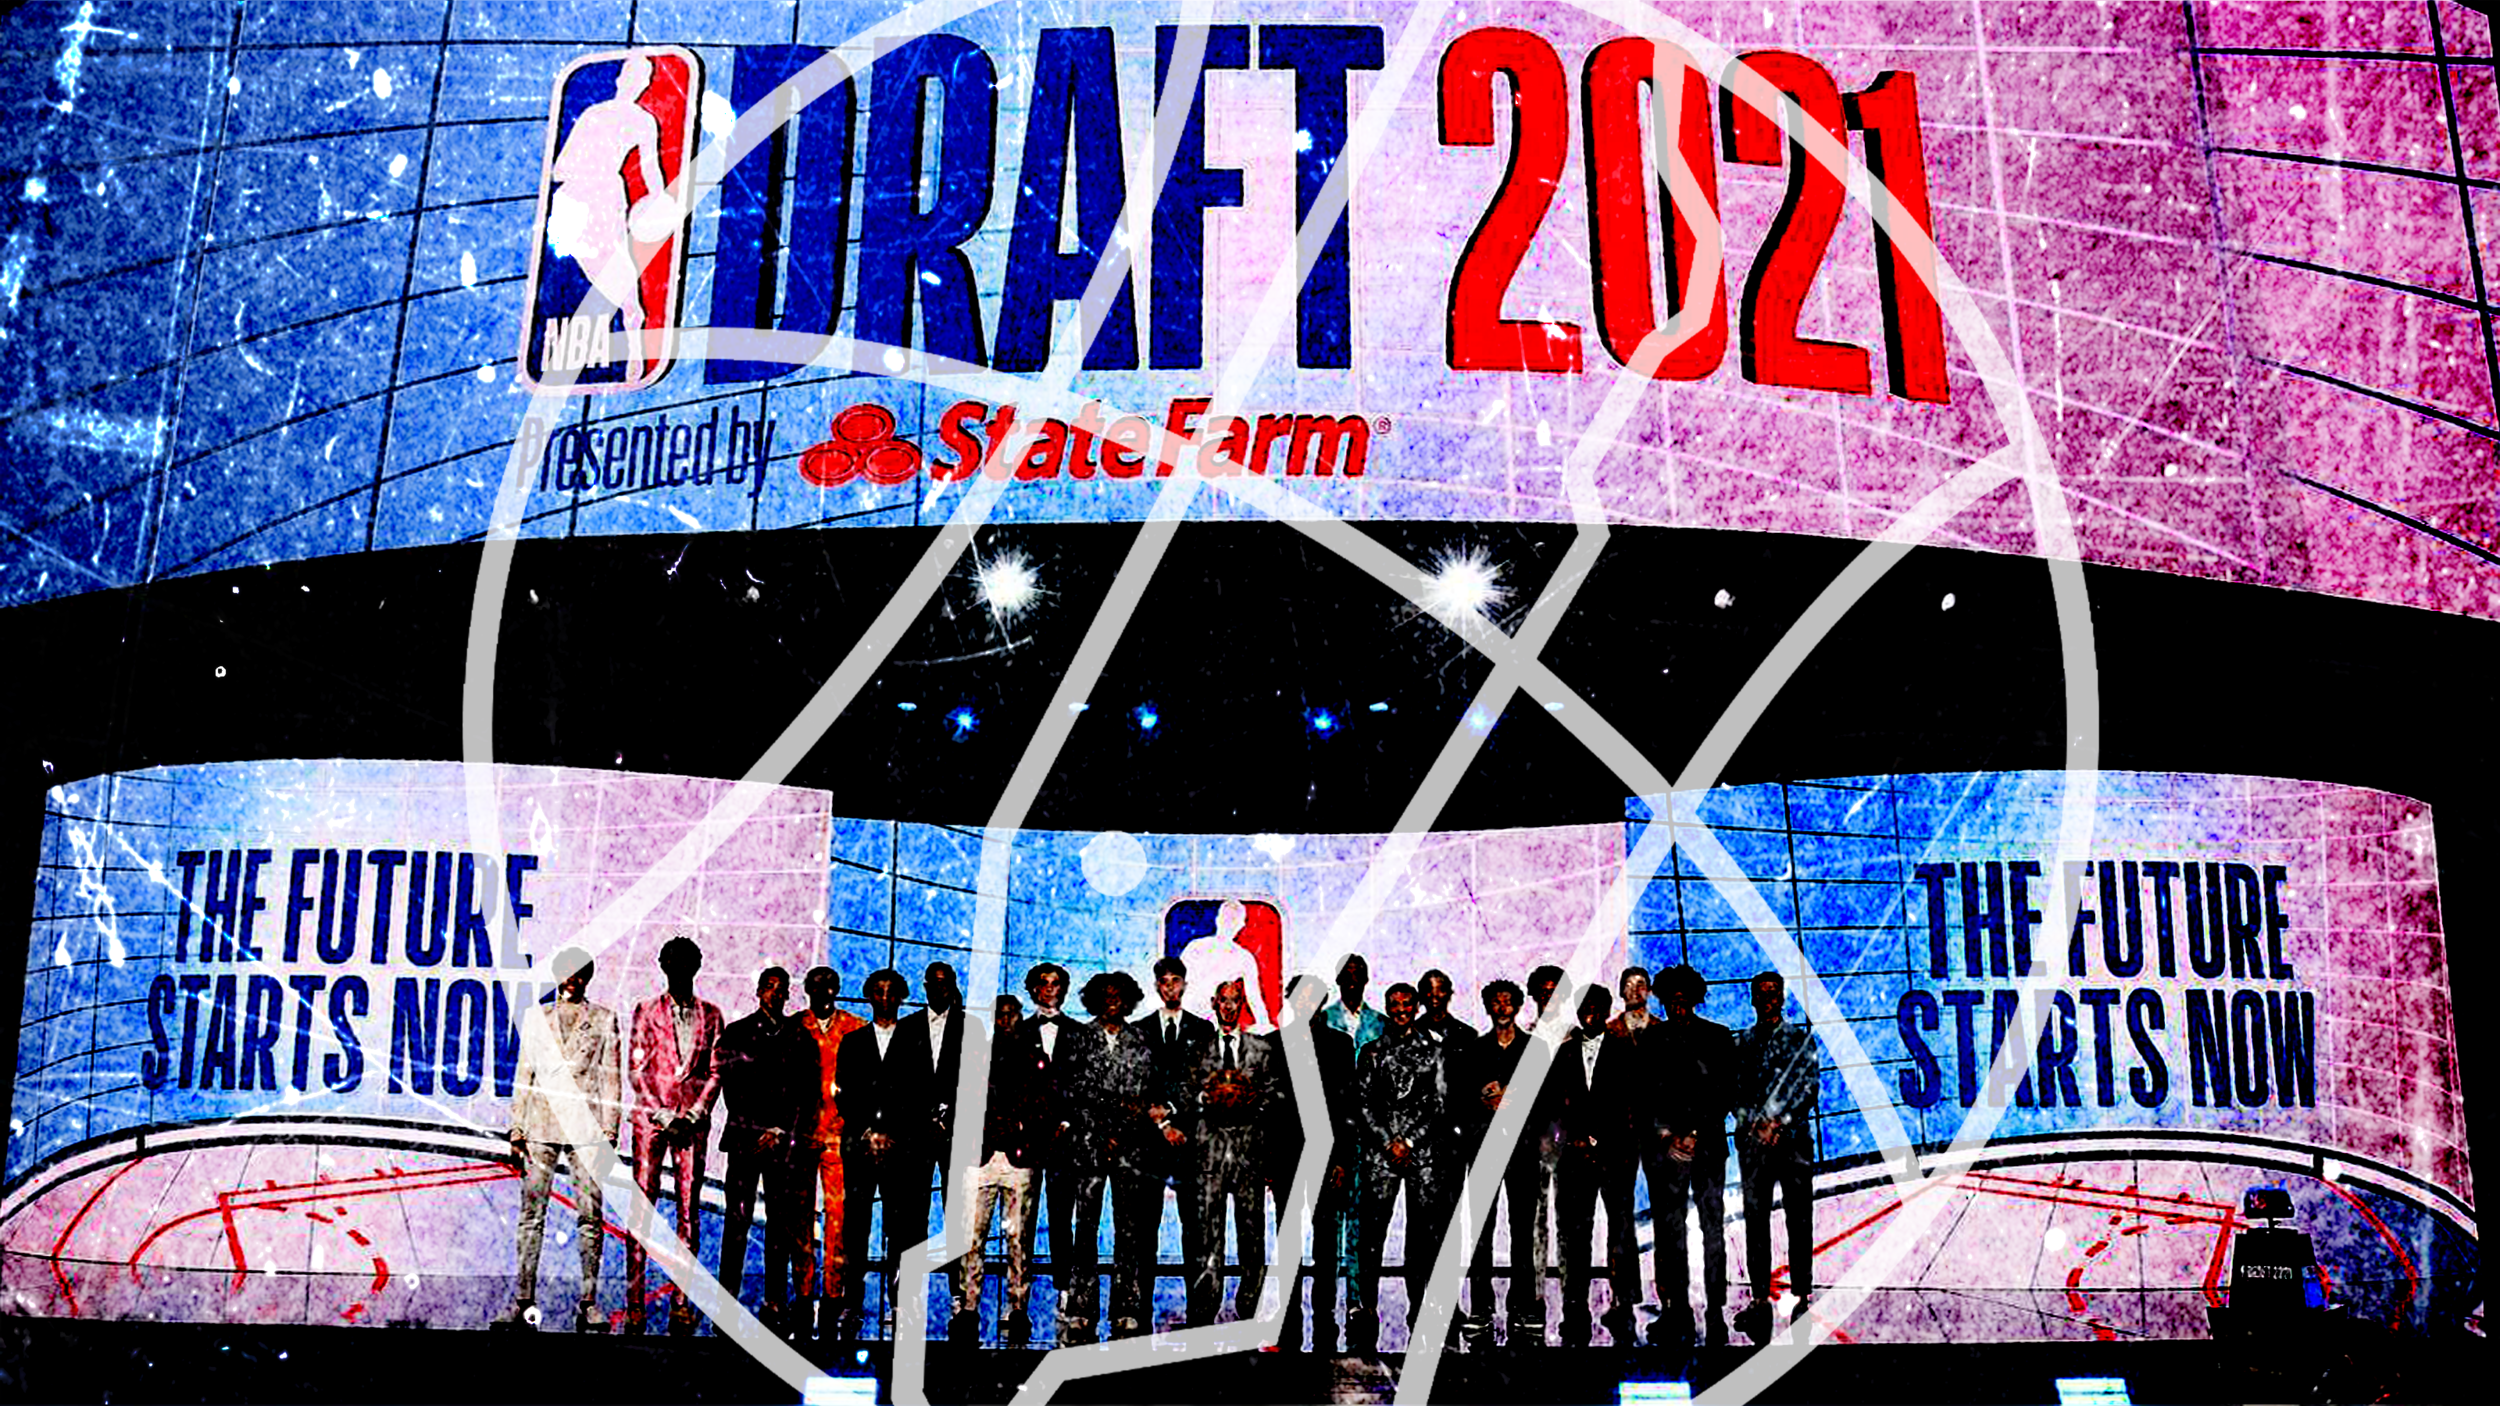 NBA Draft: Knicks Take Rokas Jokubaitis, Miles McBride